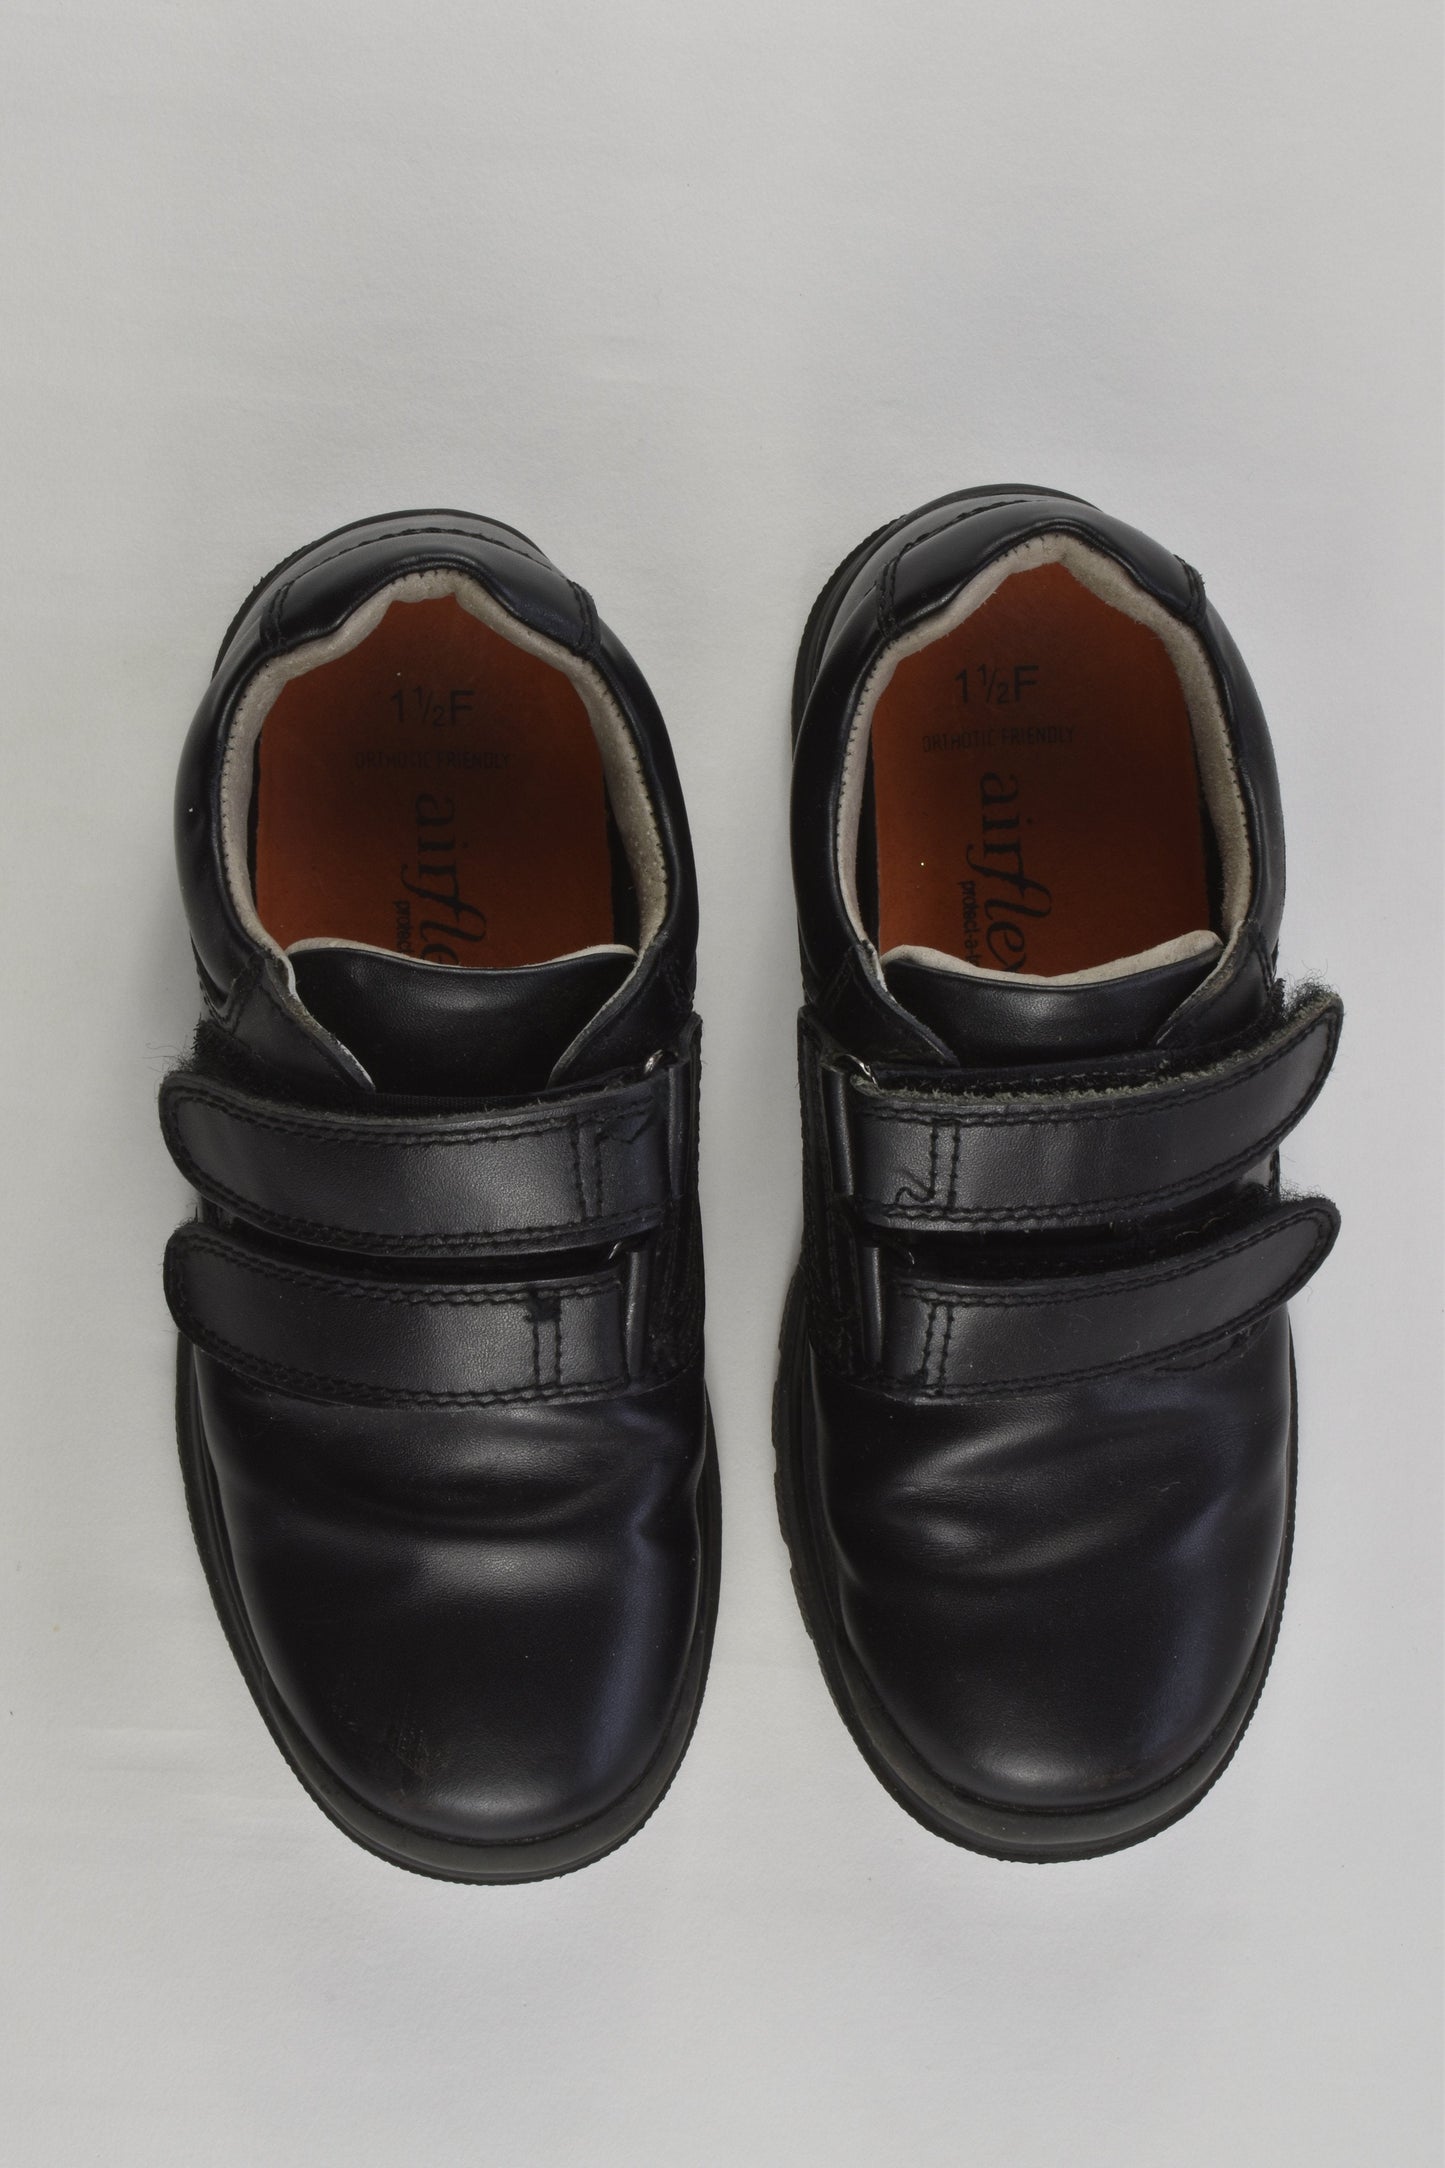 Airflex Size UK 1.5 Leather Orthotic Friendly Shoes